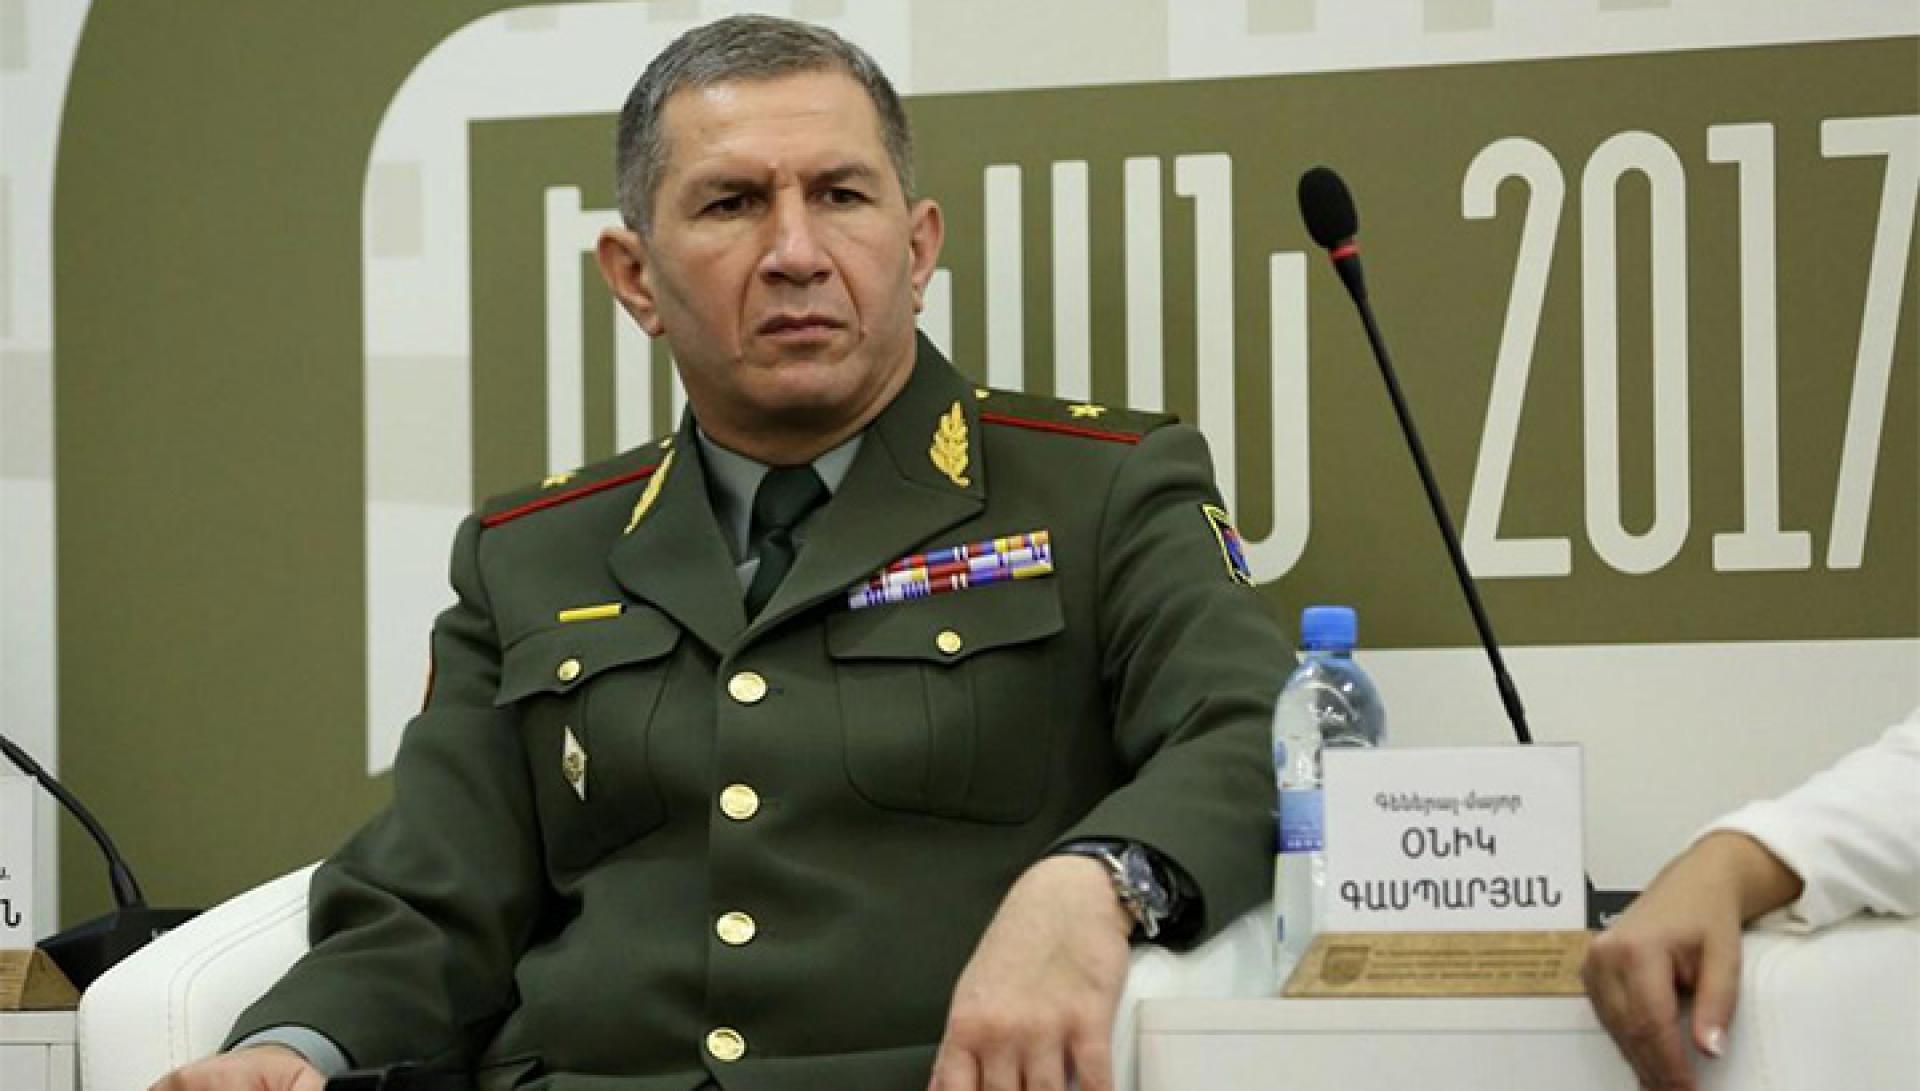 Руководящий состав Вооруженных сил выступил с заявлением и поддержал Оника Гаспаряна